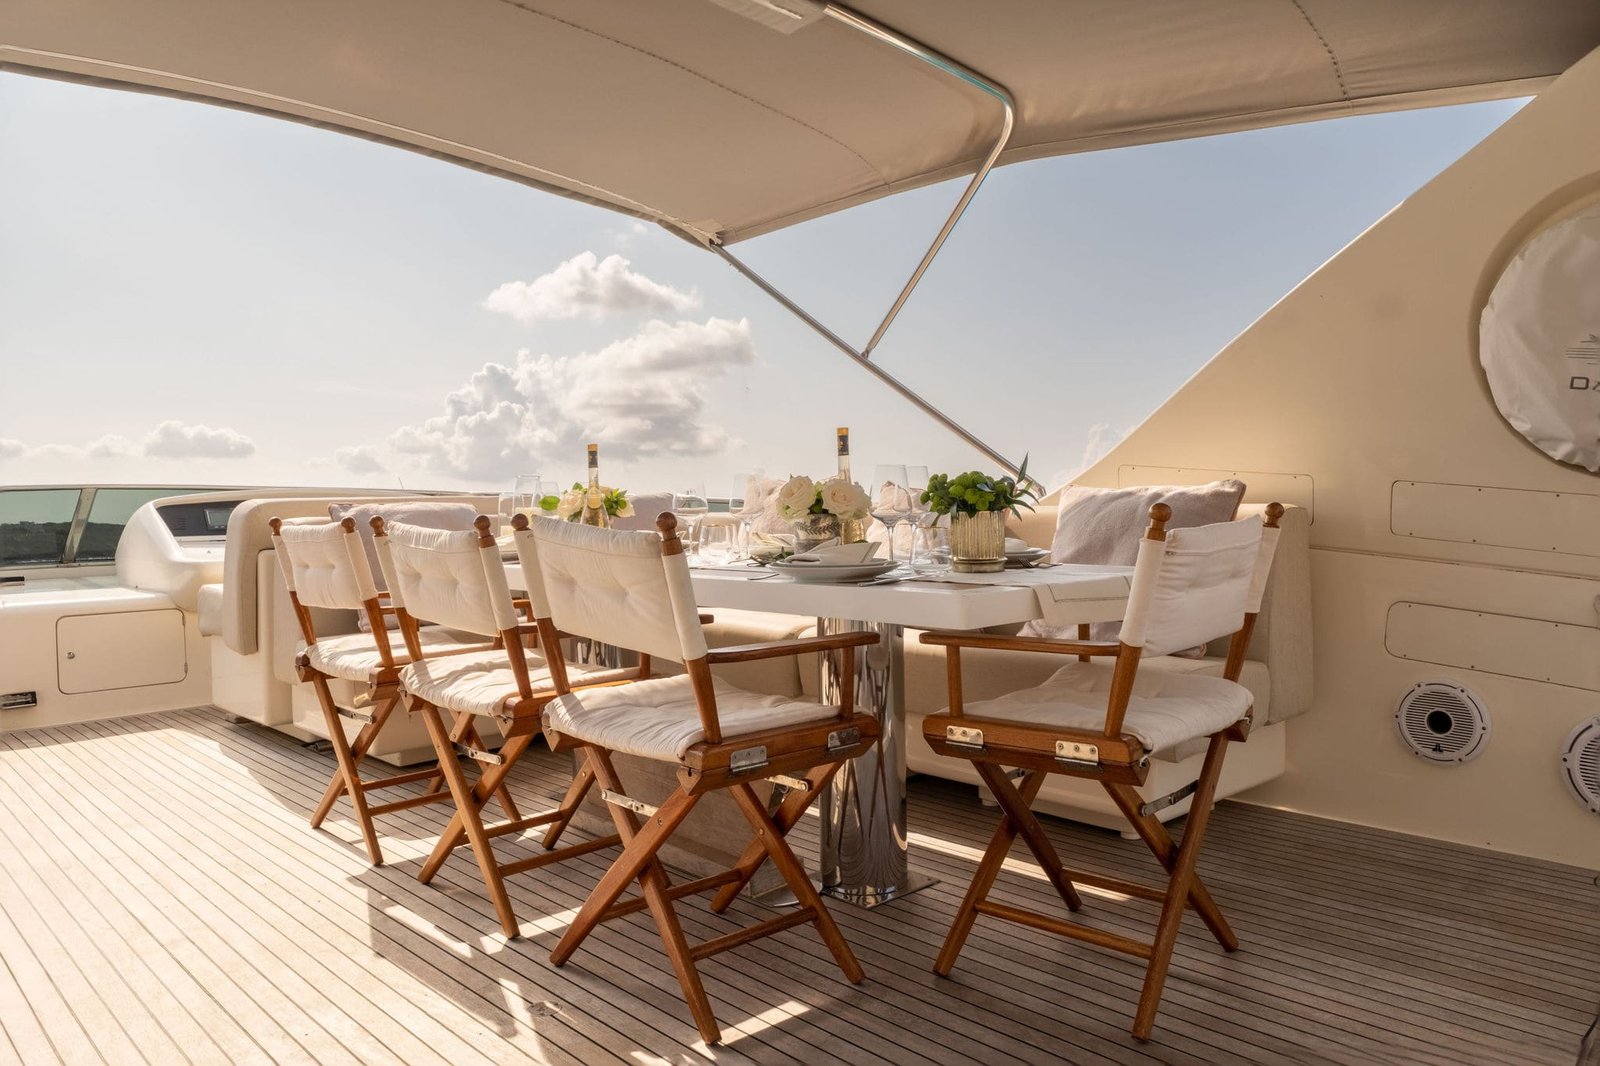 El fly del yate donde presenciamos una mesa decorada al detalle con colores blancos y cálidos junto al juego de sillas. Desde el sitio podemos apreciar el mar turquesa de las aguas de la Isla Ibiza.